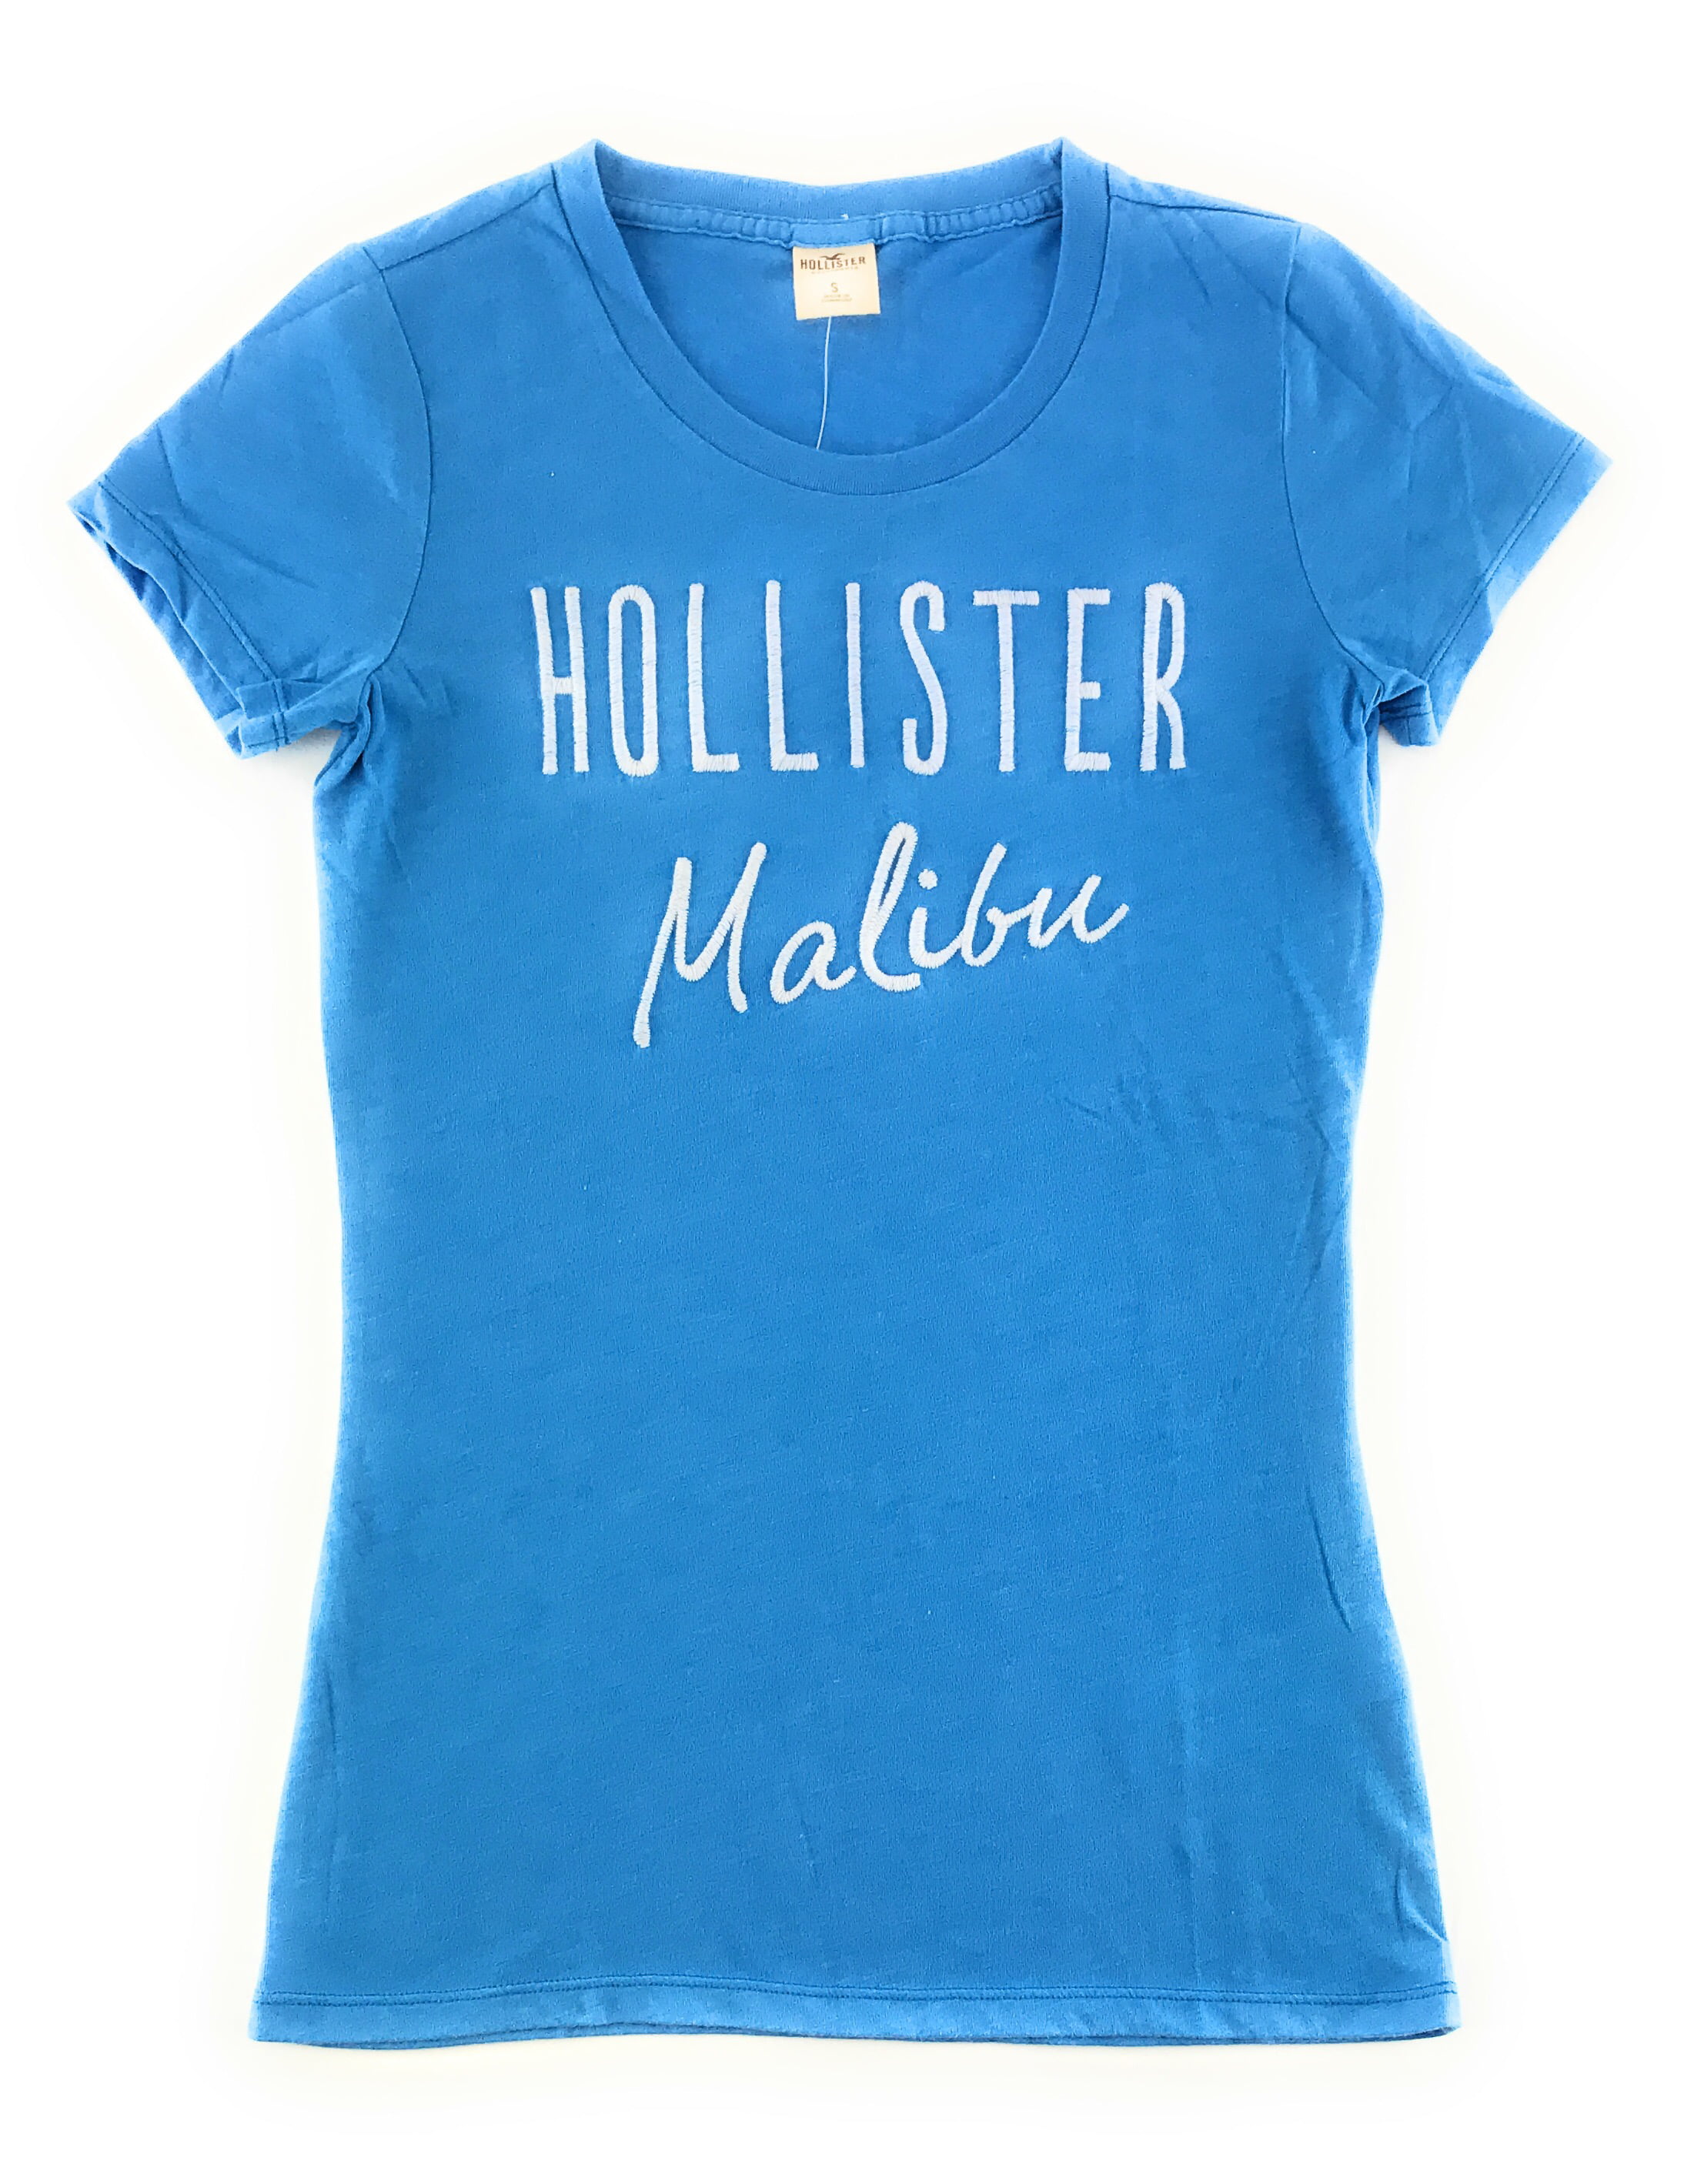 Hollister - Hollister Womens Graphic T-Shirt - Walmart.com - Walmart.com